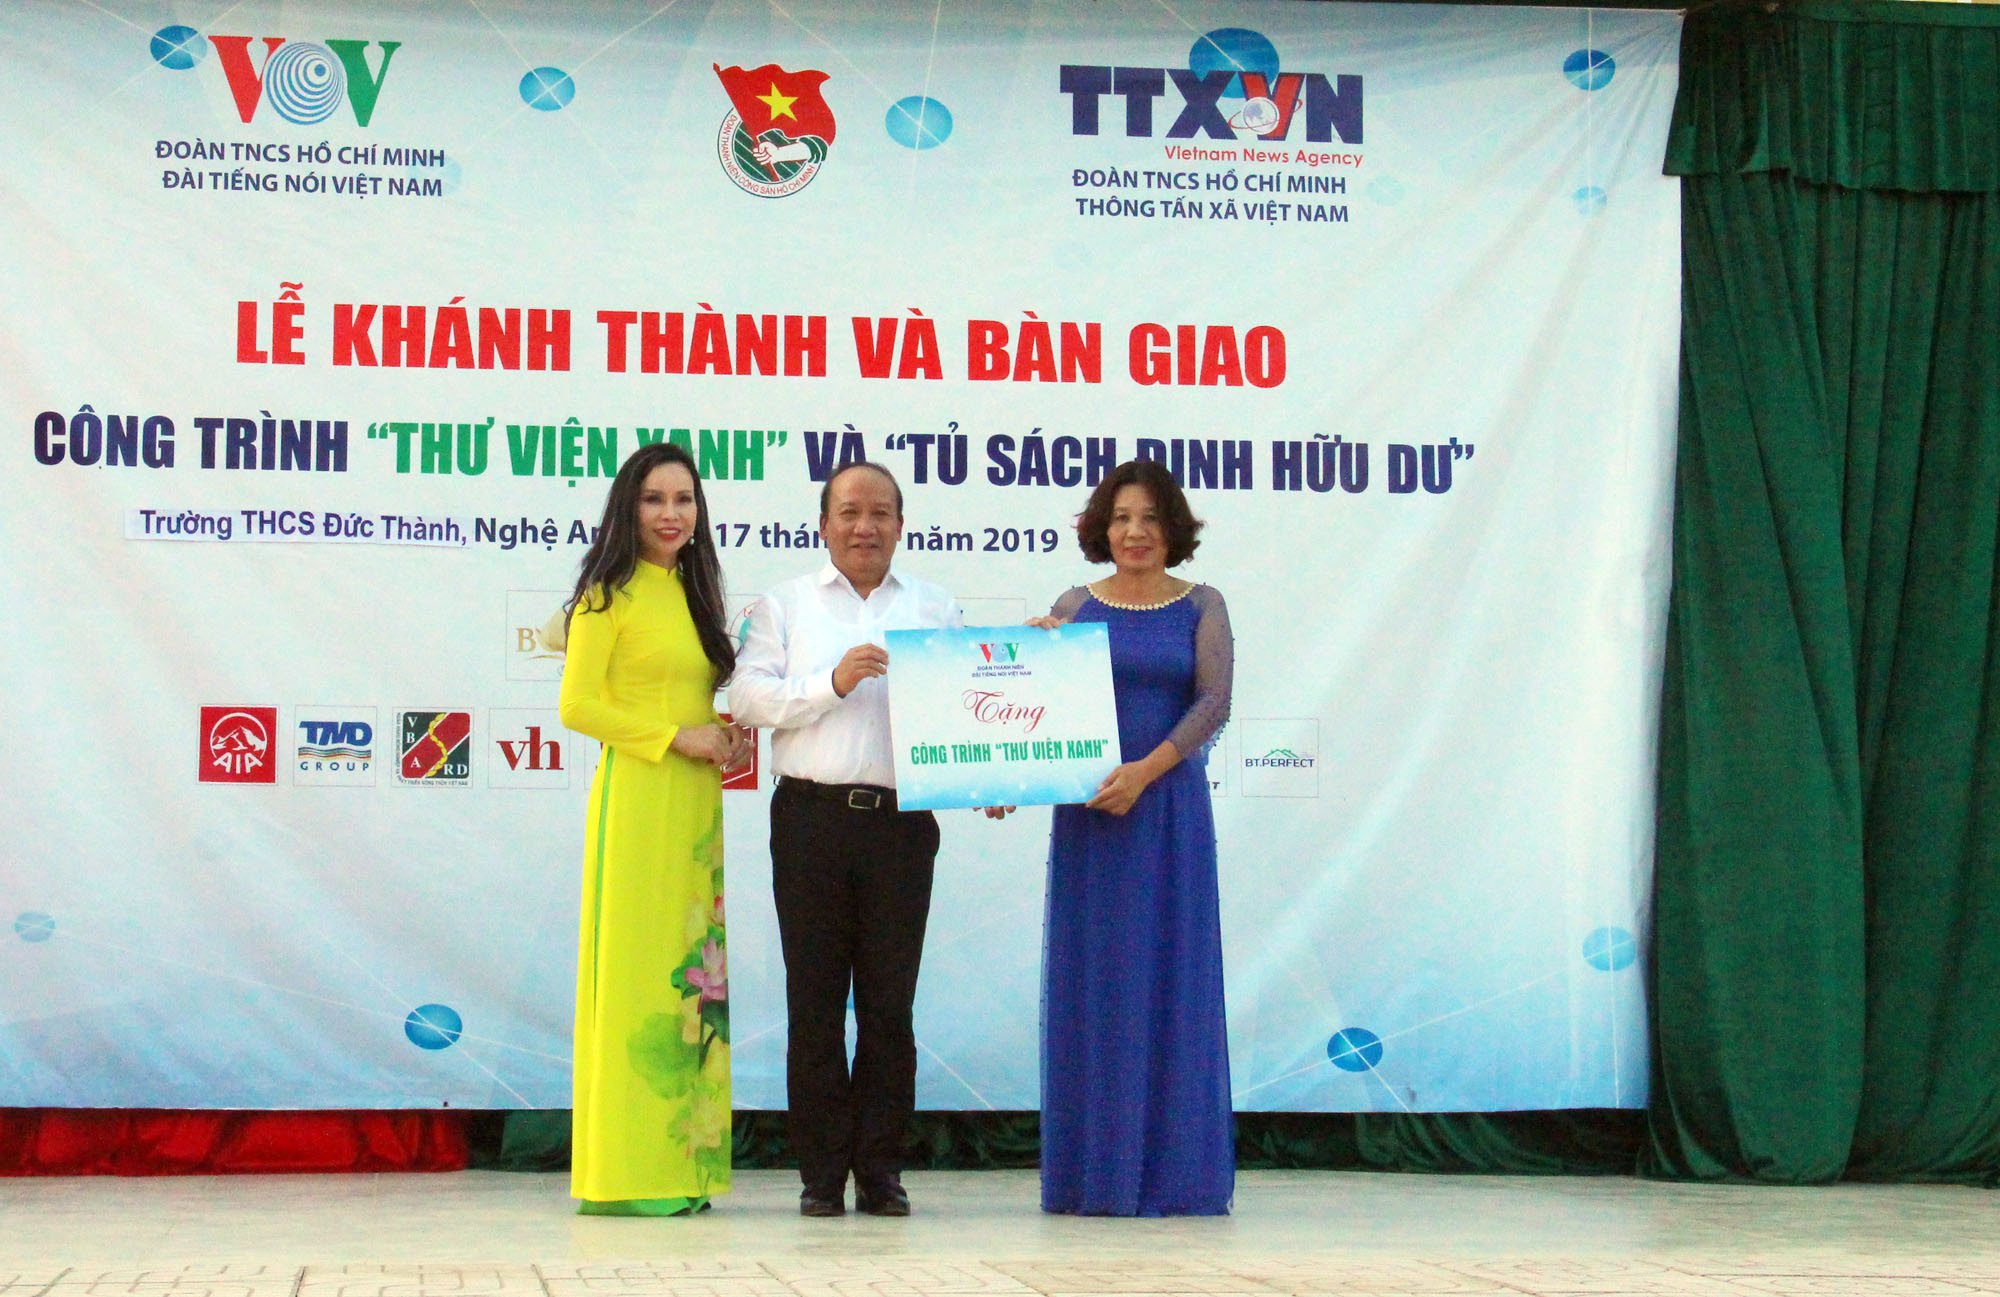 Đại diện lãnh đạo Đài tiếng nói Việt Nam trao biển tượng trưng bàn giao công trình Thư viện Xanh cho trường THCS Đức Thành, đại diện Thông tấn xã Việt Nam trao tặng 1000 đầu sách. 